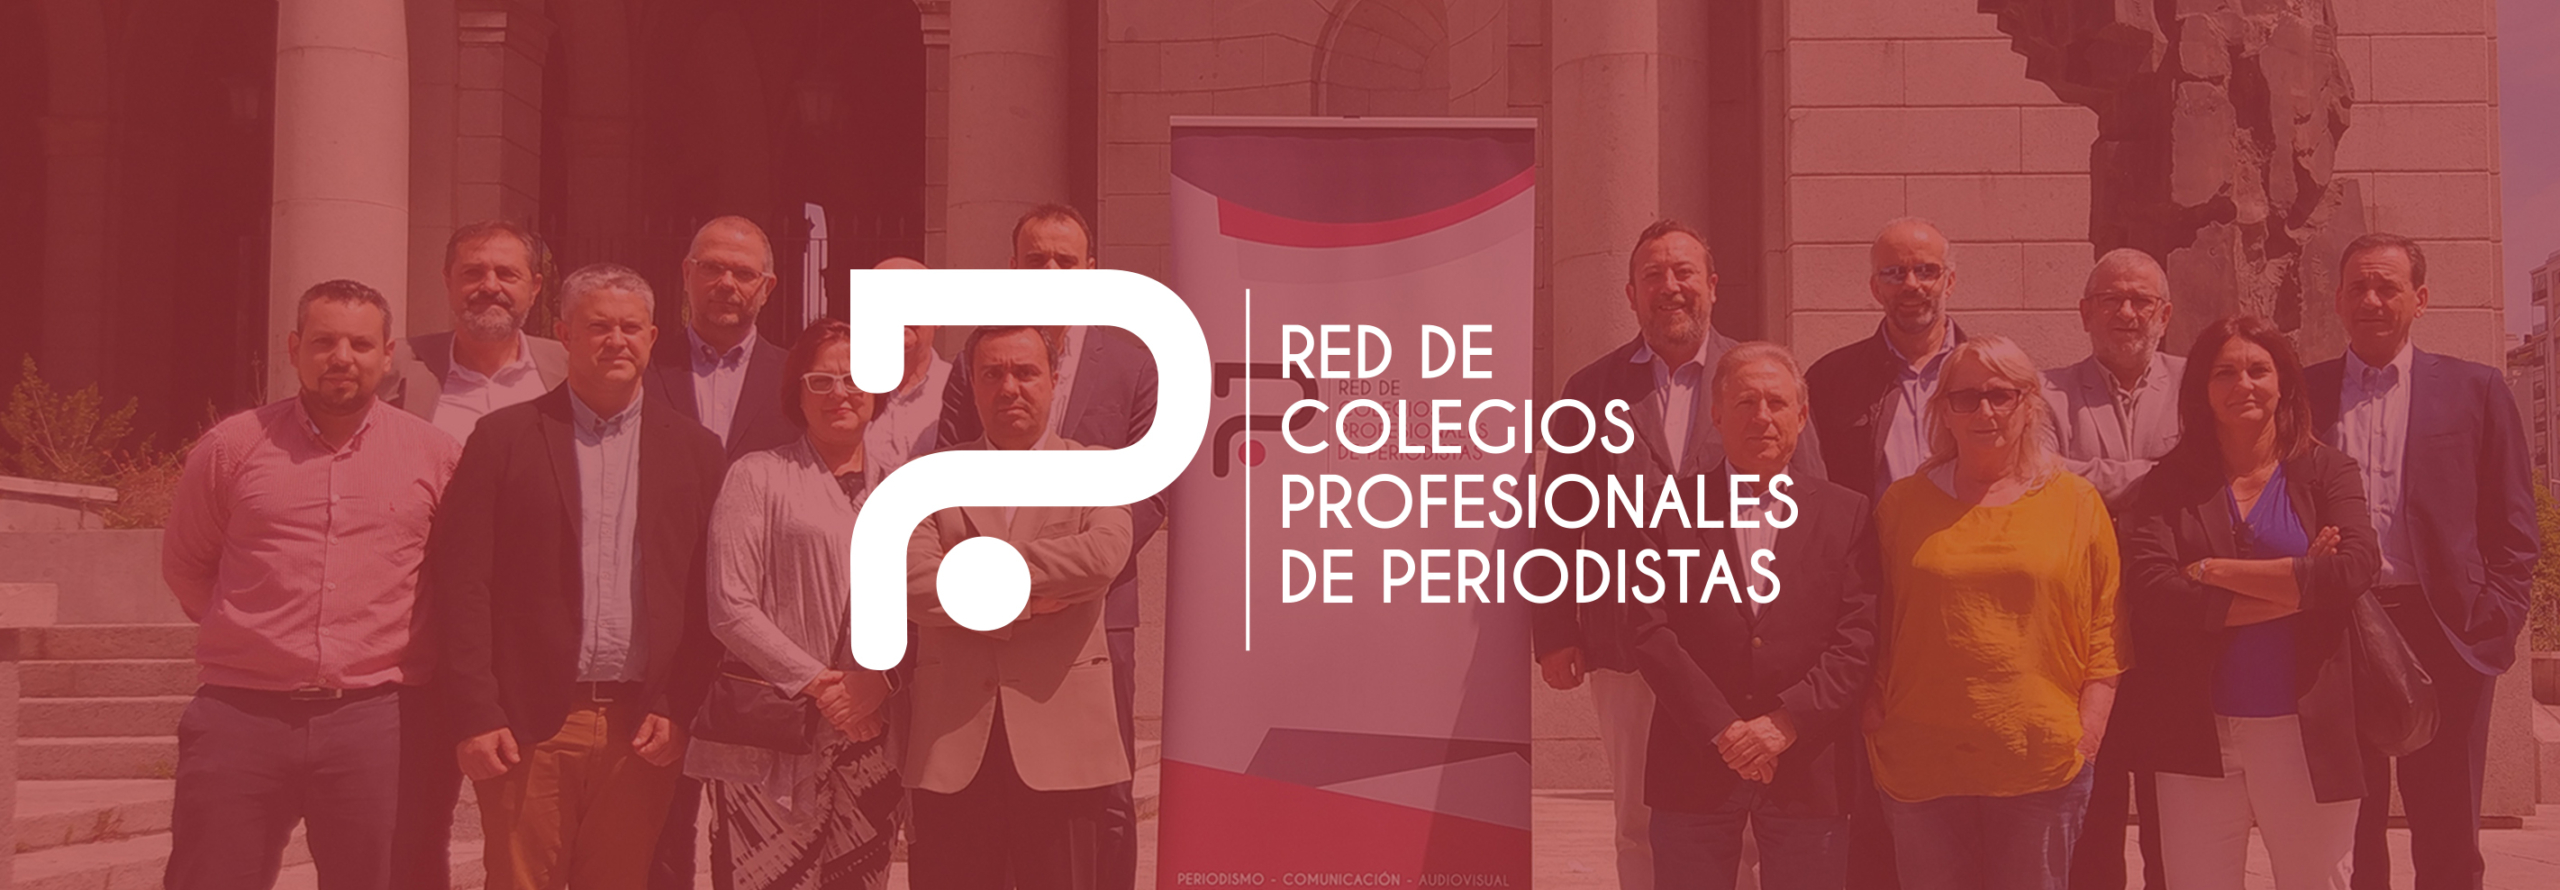 La Red de Colegios de Periodistas apoya la candidatura de Cádiz como sede del X Congreso Internacional de la Lengua